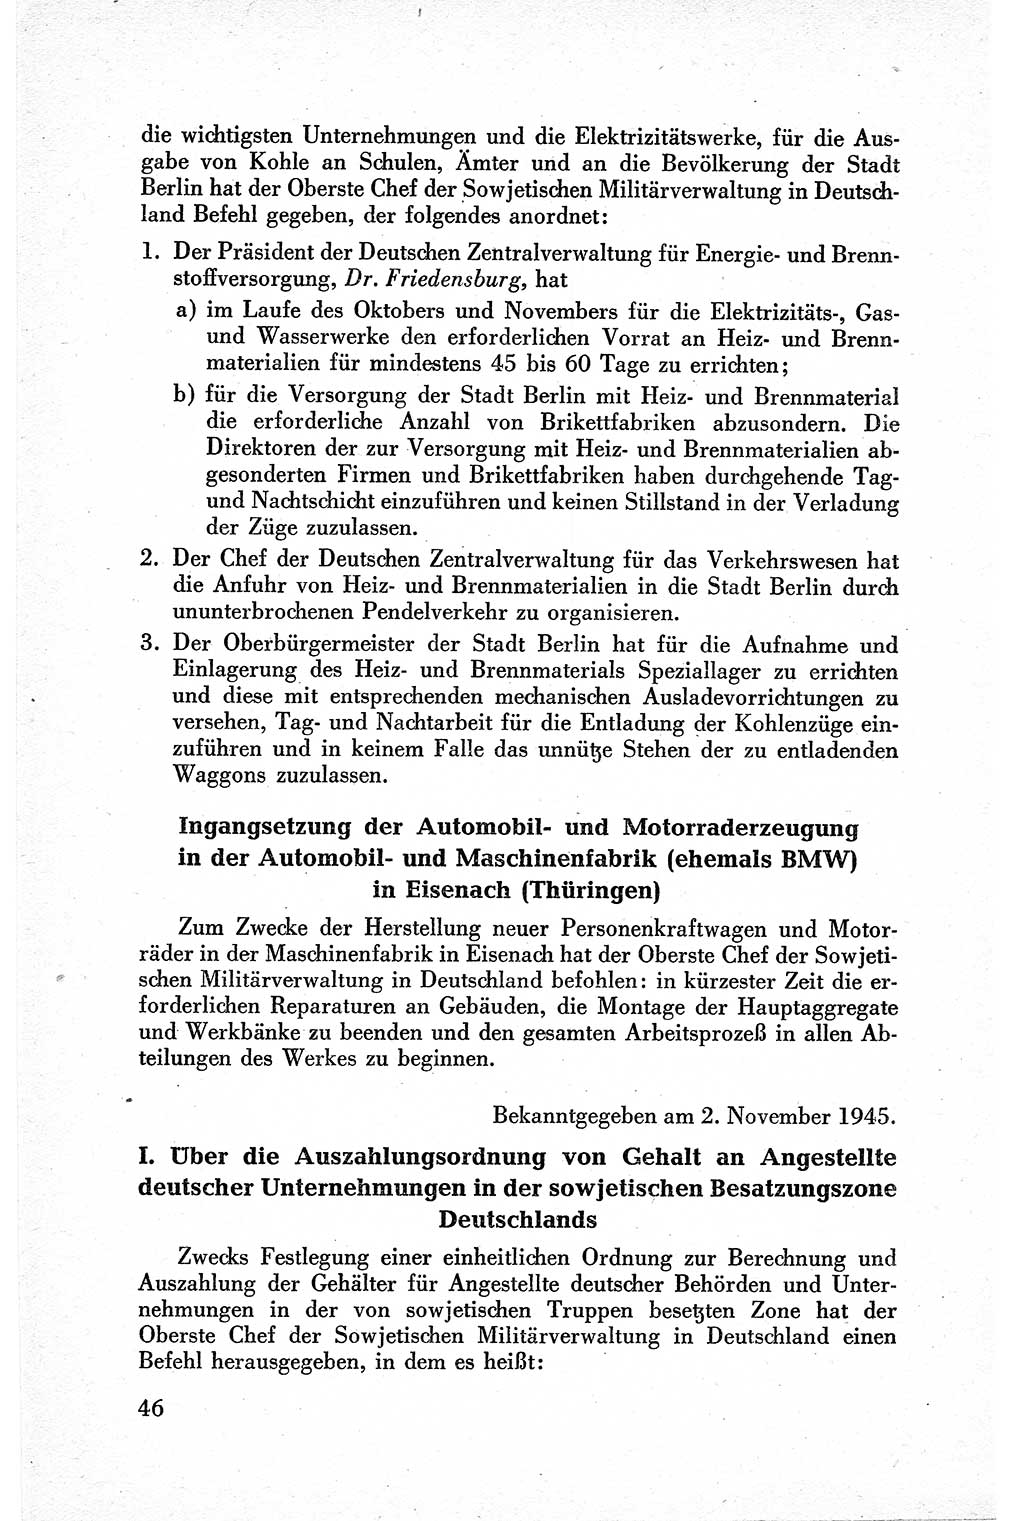 Befehle des Obersten Chefs der Sowjetischen Miltärverwaltung (SMV) in Deutschland - Aus dem Stab der Sowjetischen Militärverwaltung in Deutschland 1945, Seite 46 (Bef. SMV Dtl. 1945, S. 46)